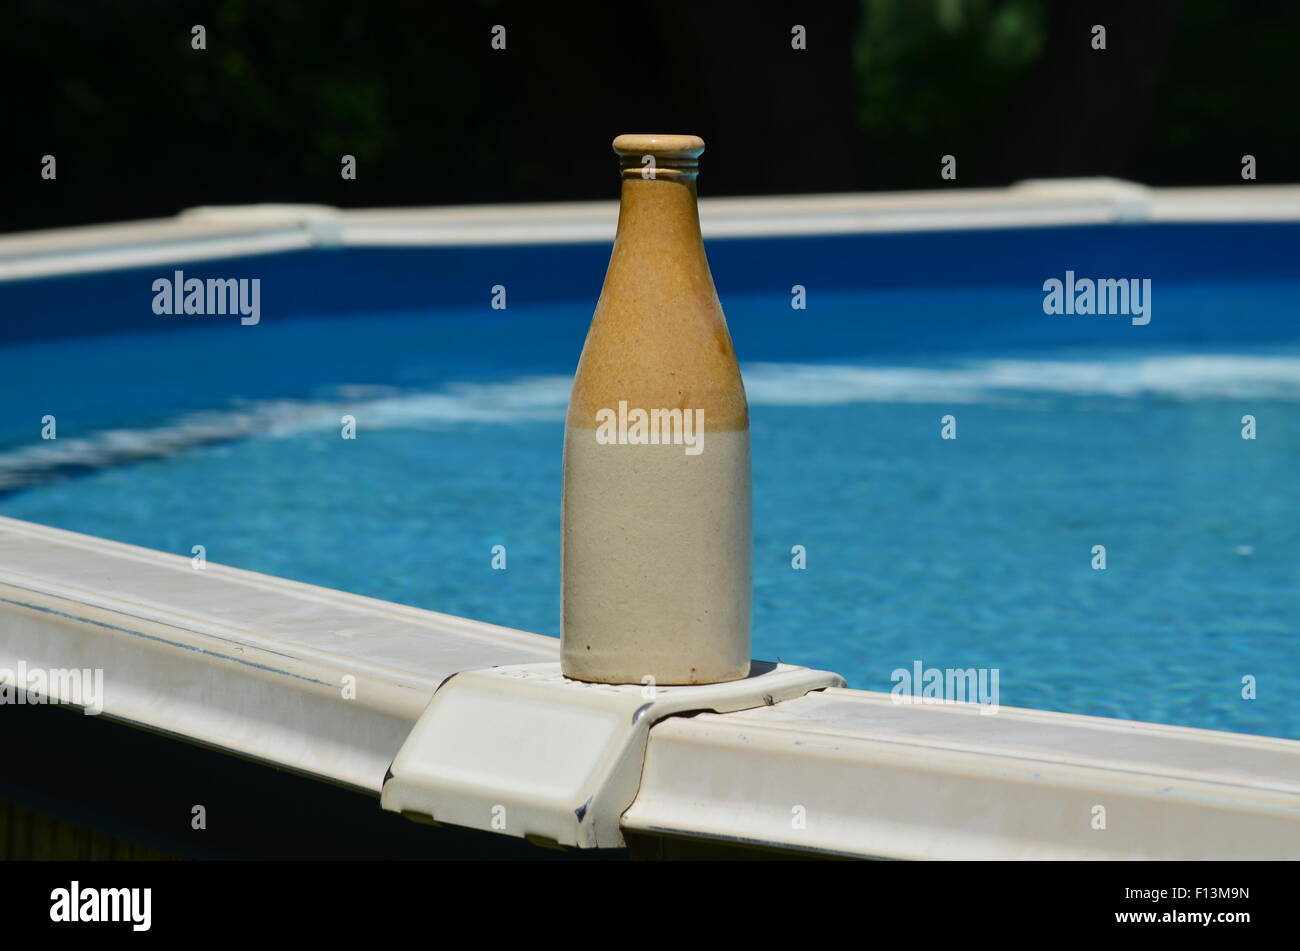 https://c8.alamy.com/comp/F13M9N/clay-bottle-F13M9N.jpg